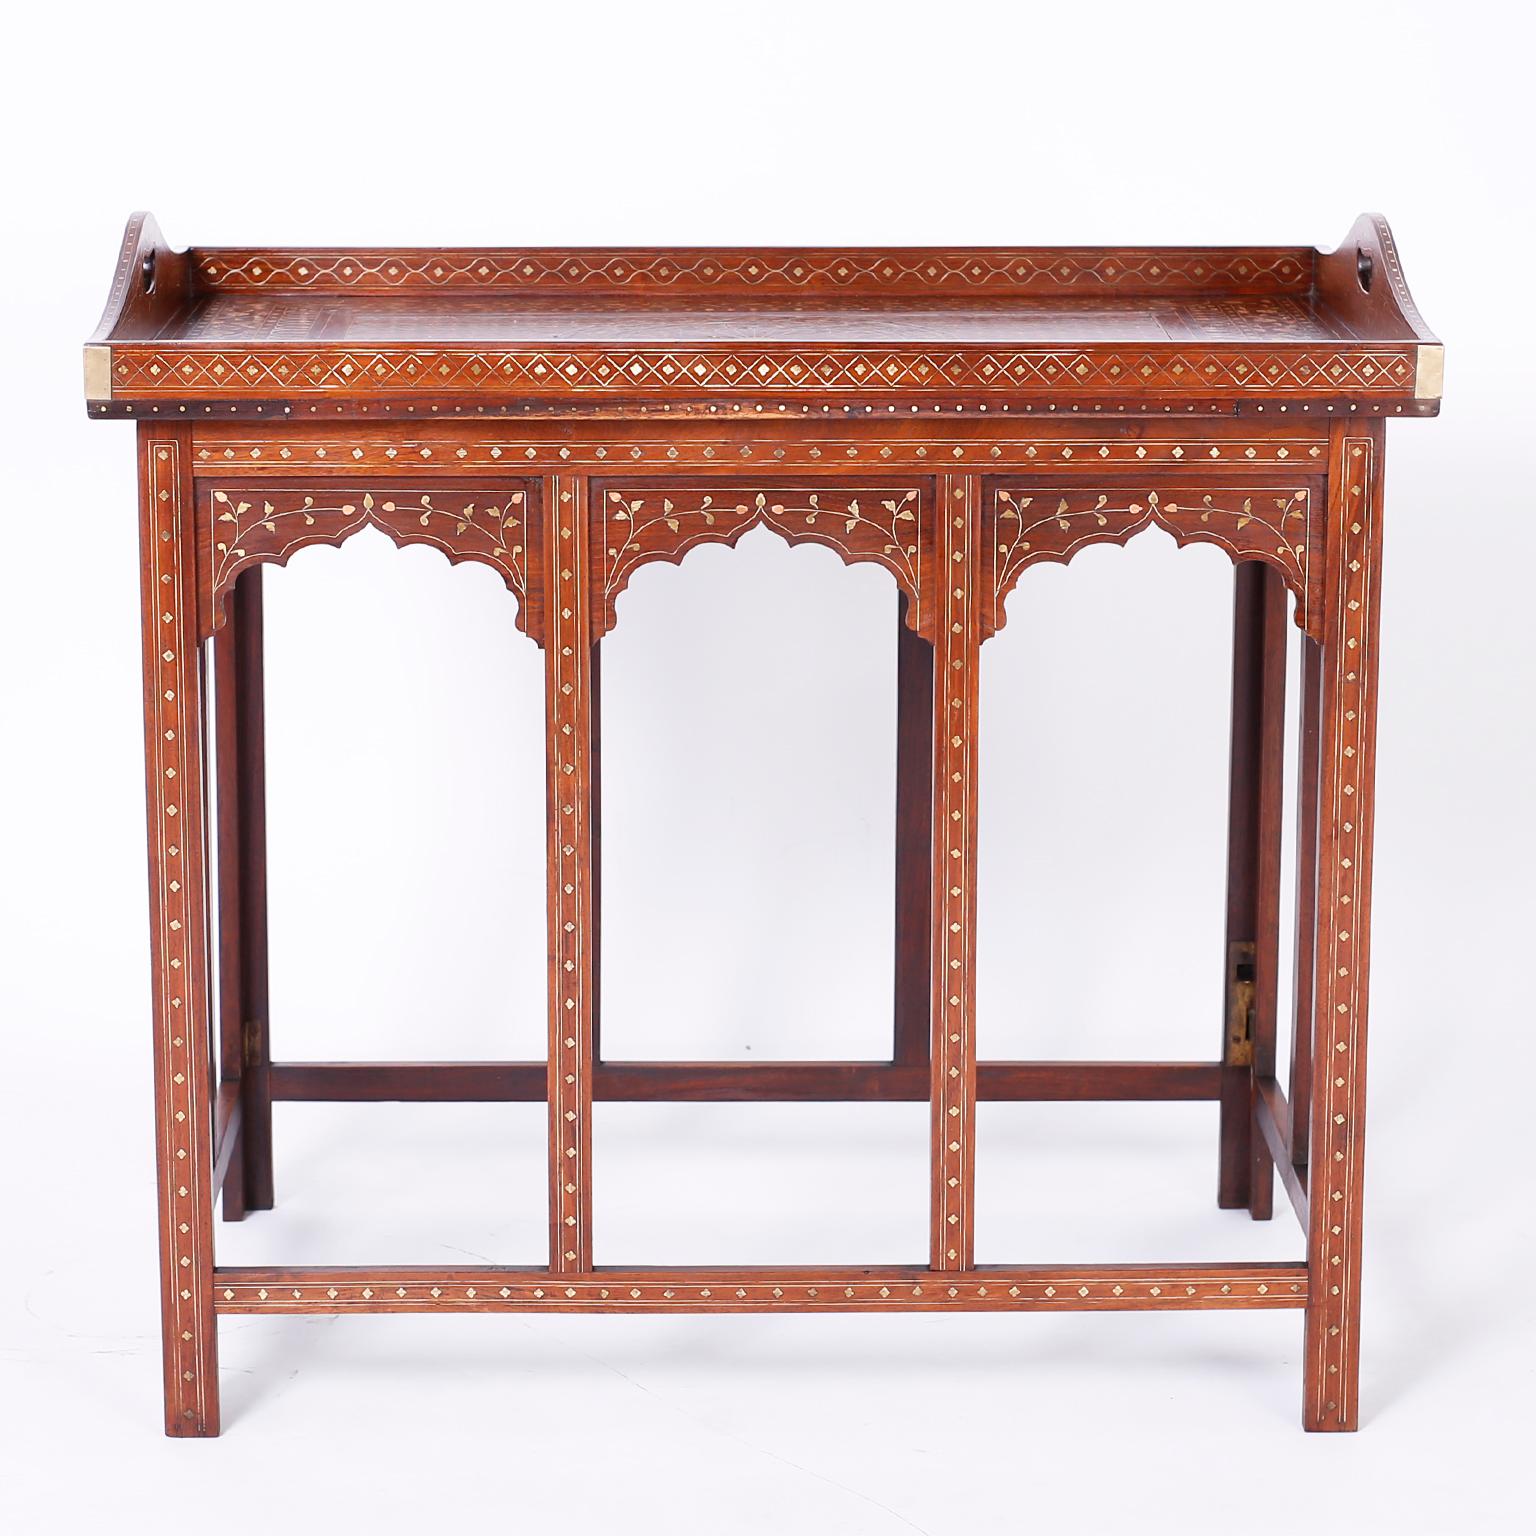 Antiker anglo-indischer Tisch aus Palisanderholz mit abnehmbarem Serviertablett auf der Oberseite, das mit zarten Blumenmustern aus Kupfer und Messing kunstvoll eingelegt ist. Der Sockel hat architektonisch interessante Rundbögen und ist mit